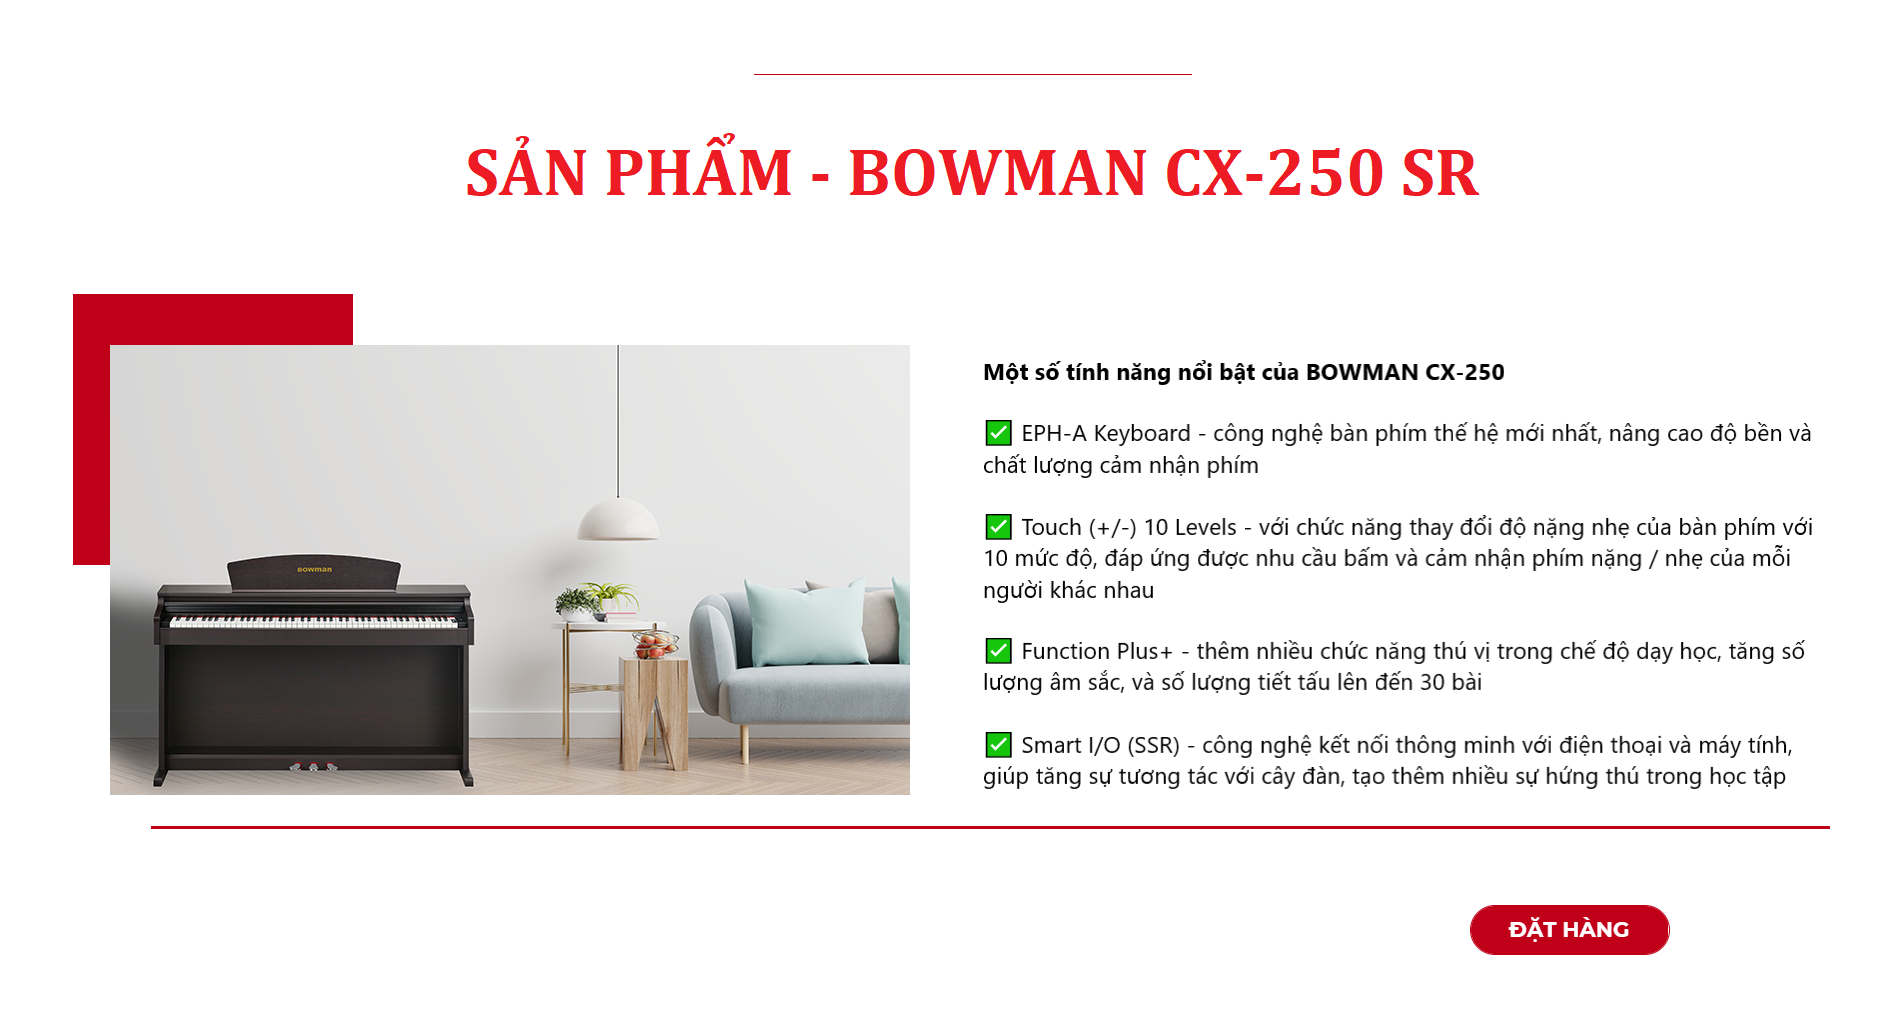 Những tính năng nổi bật của sản phẩm PIANO điện MỚI - BOWMAN CX-250